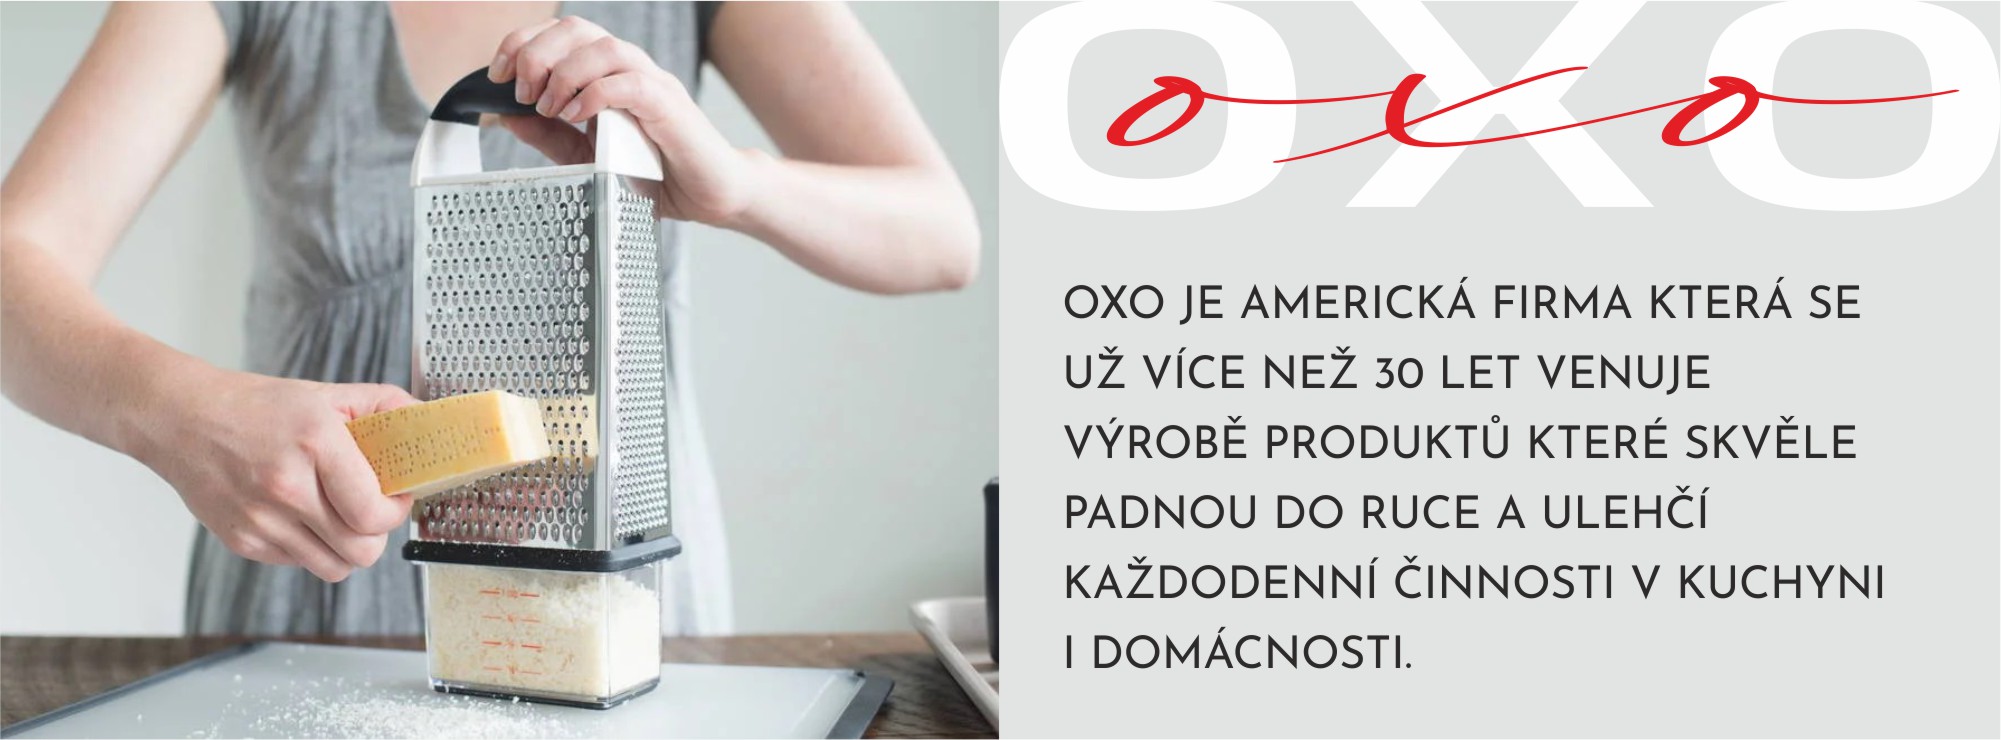 OXO-info-struhadlo-CZ